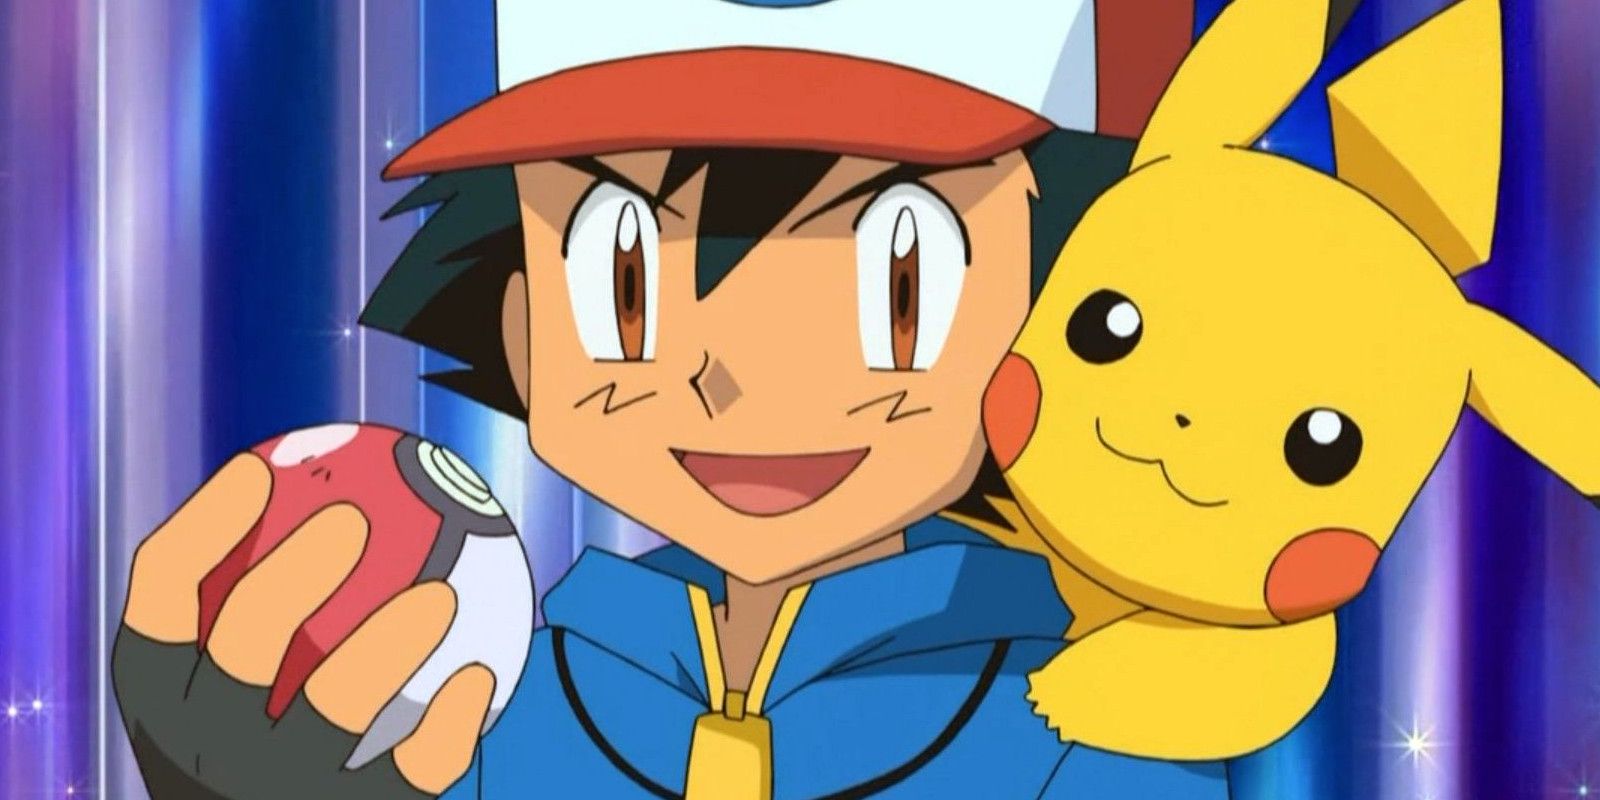 Could a Team of Pokémon Ash Released Win the Pokémon League